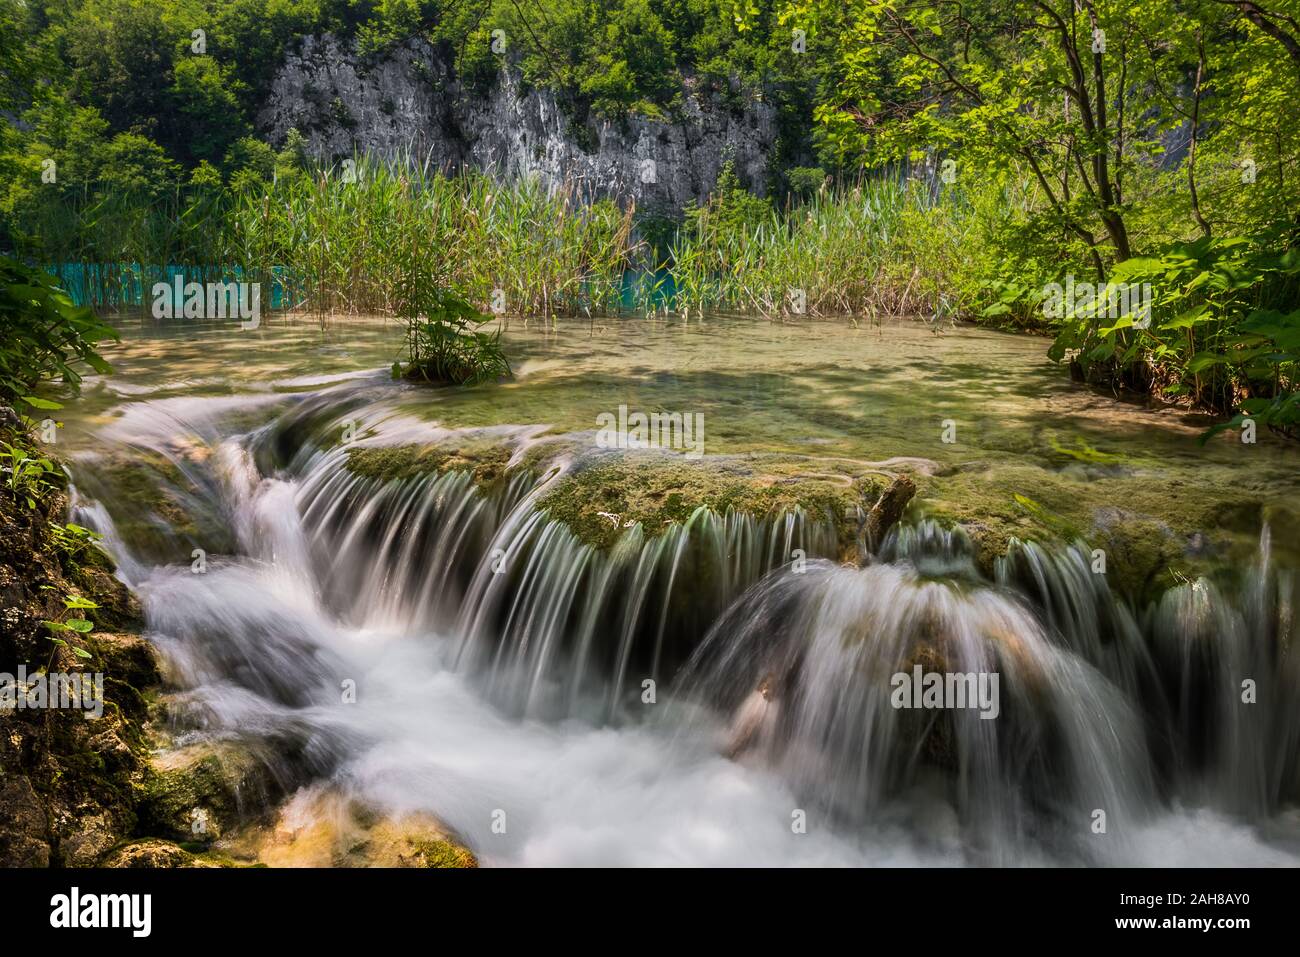 Ampia vista panoramica di un torrente che scorre nelle rapide circondato dalla vegetazione nel parco delle cascate di Plitvice Foto Stock